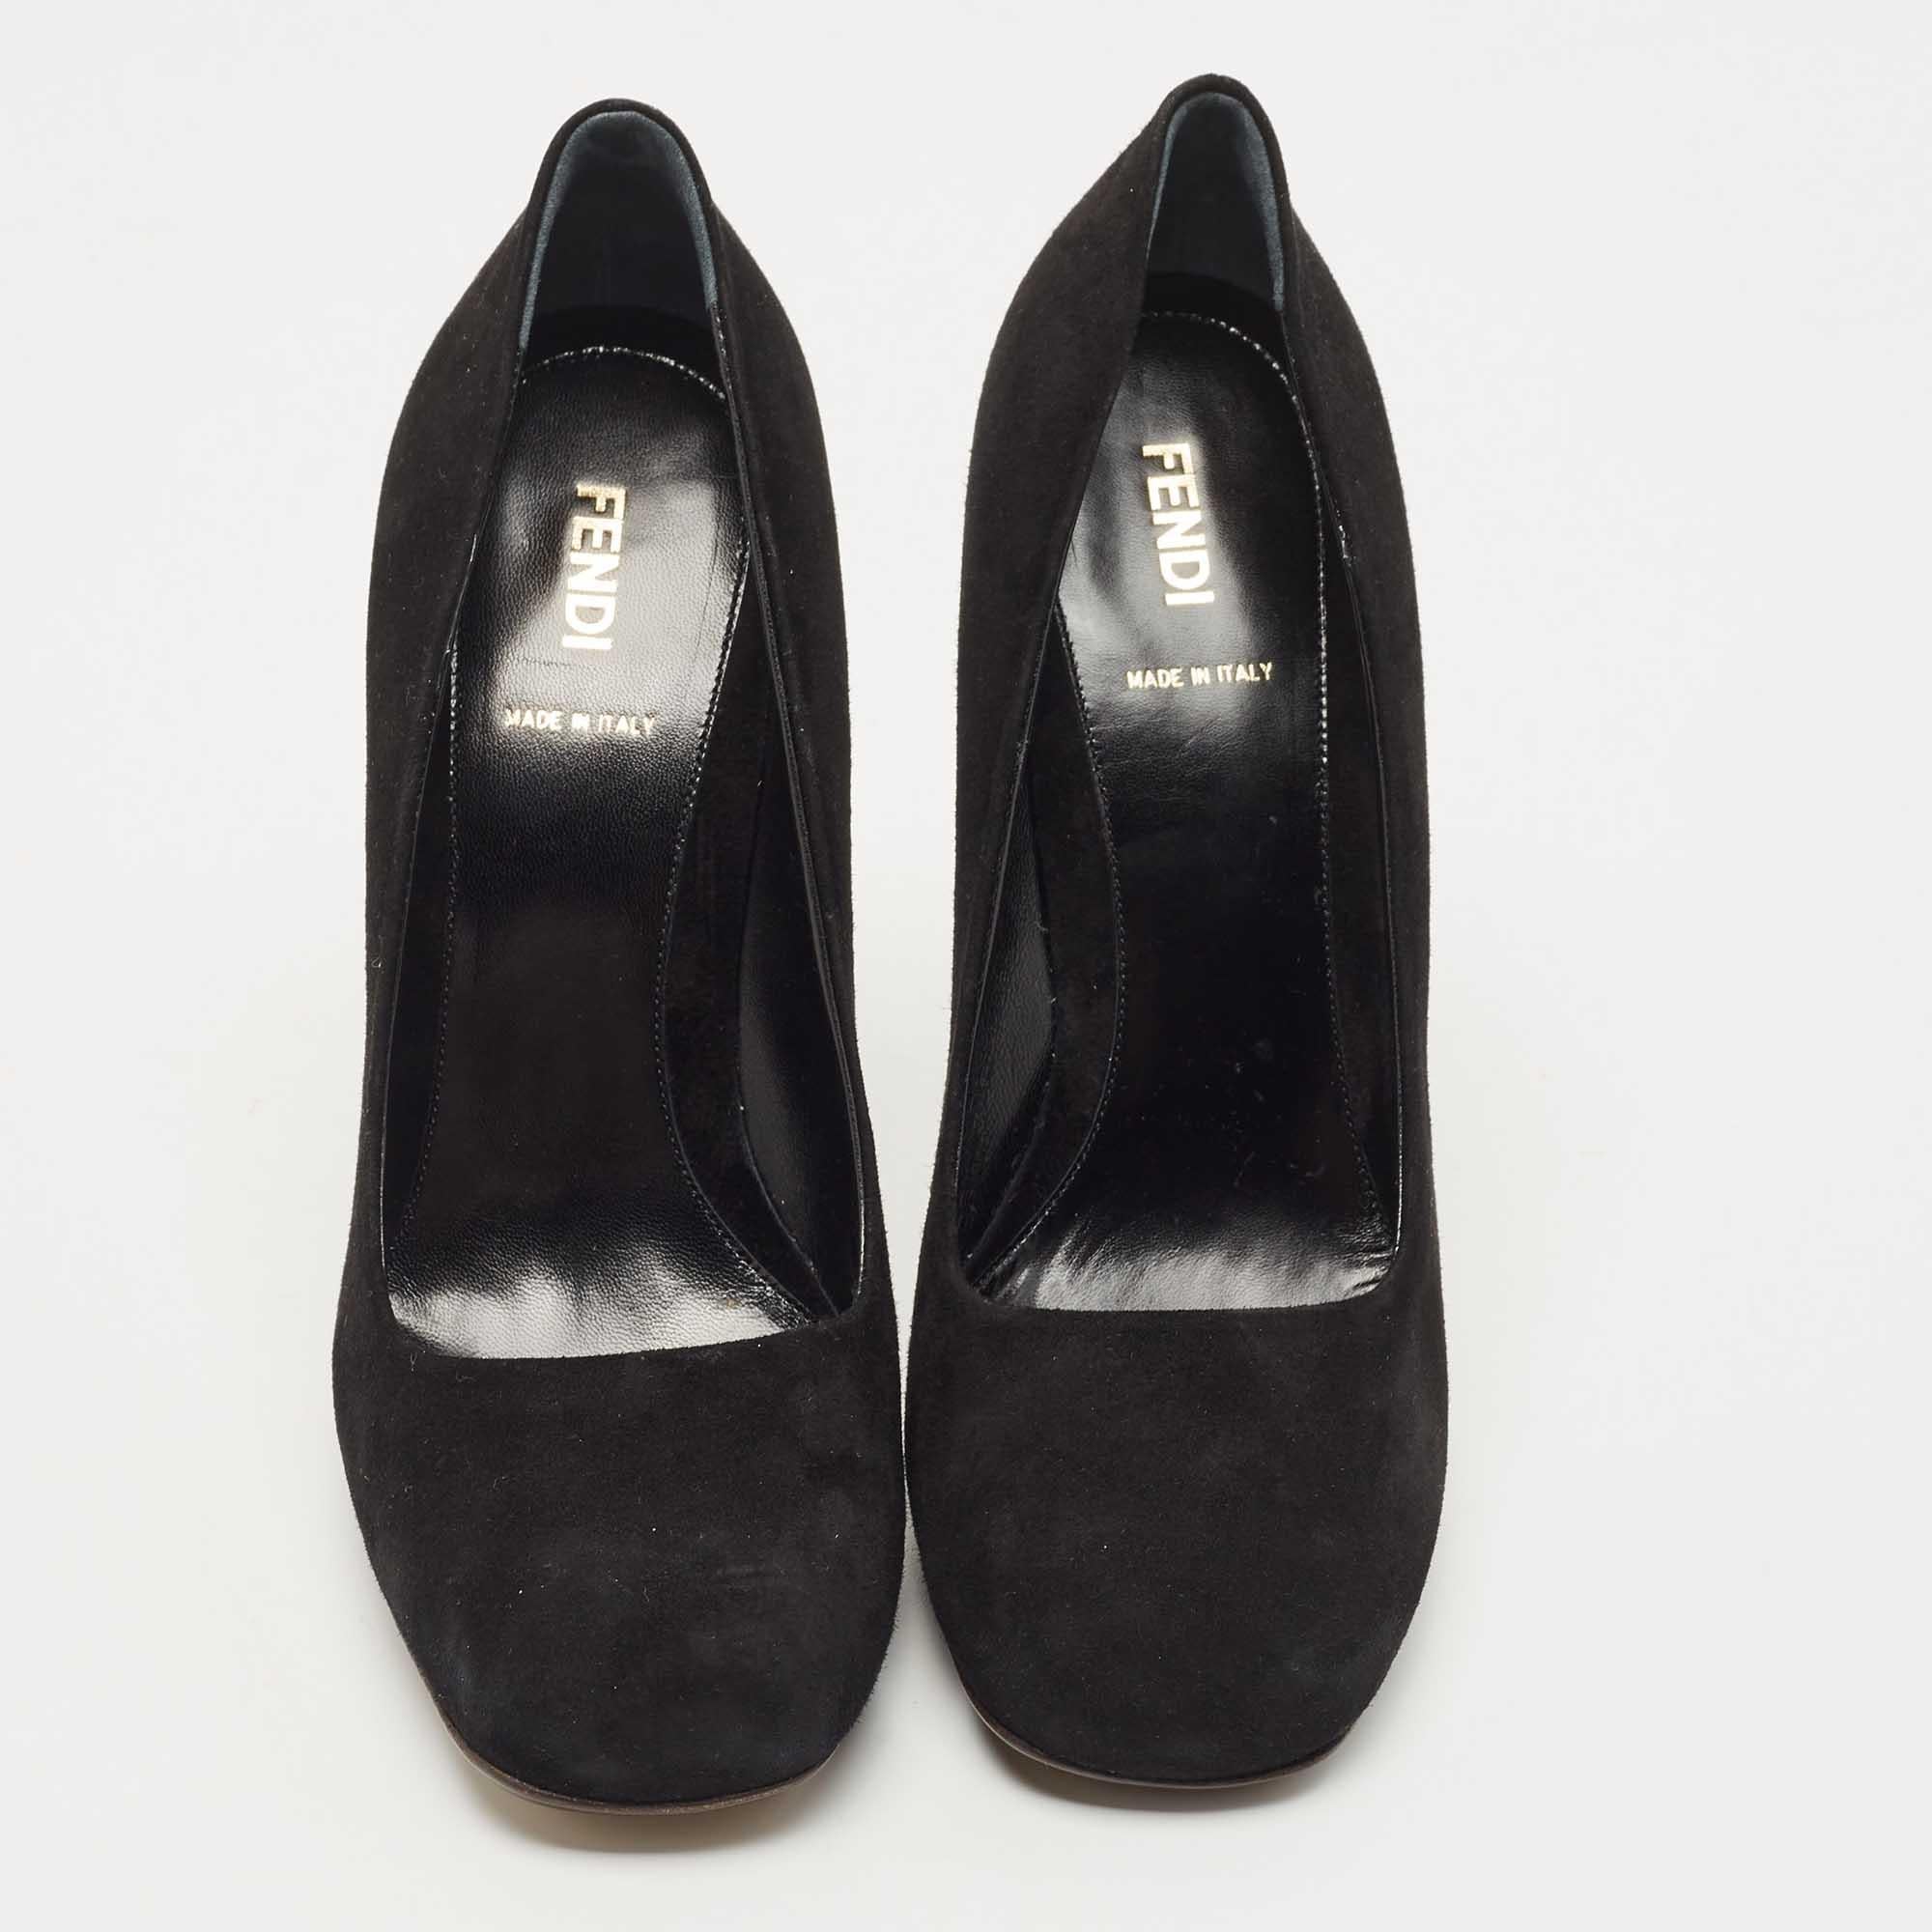 Perfekt genäht und verarbeitet, um einen eleganten Look und eine gute Passform zu gewährleisten, sind diese schwarzen Schuhe von Fendi ein Kauf, den Sie gerne zur Schau stellen werden. Sie sehen toll an den Füßen aus.

Enthält: Extra Absätze,